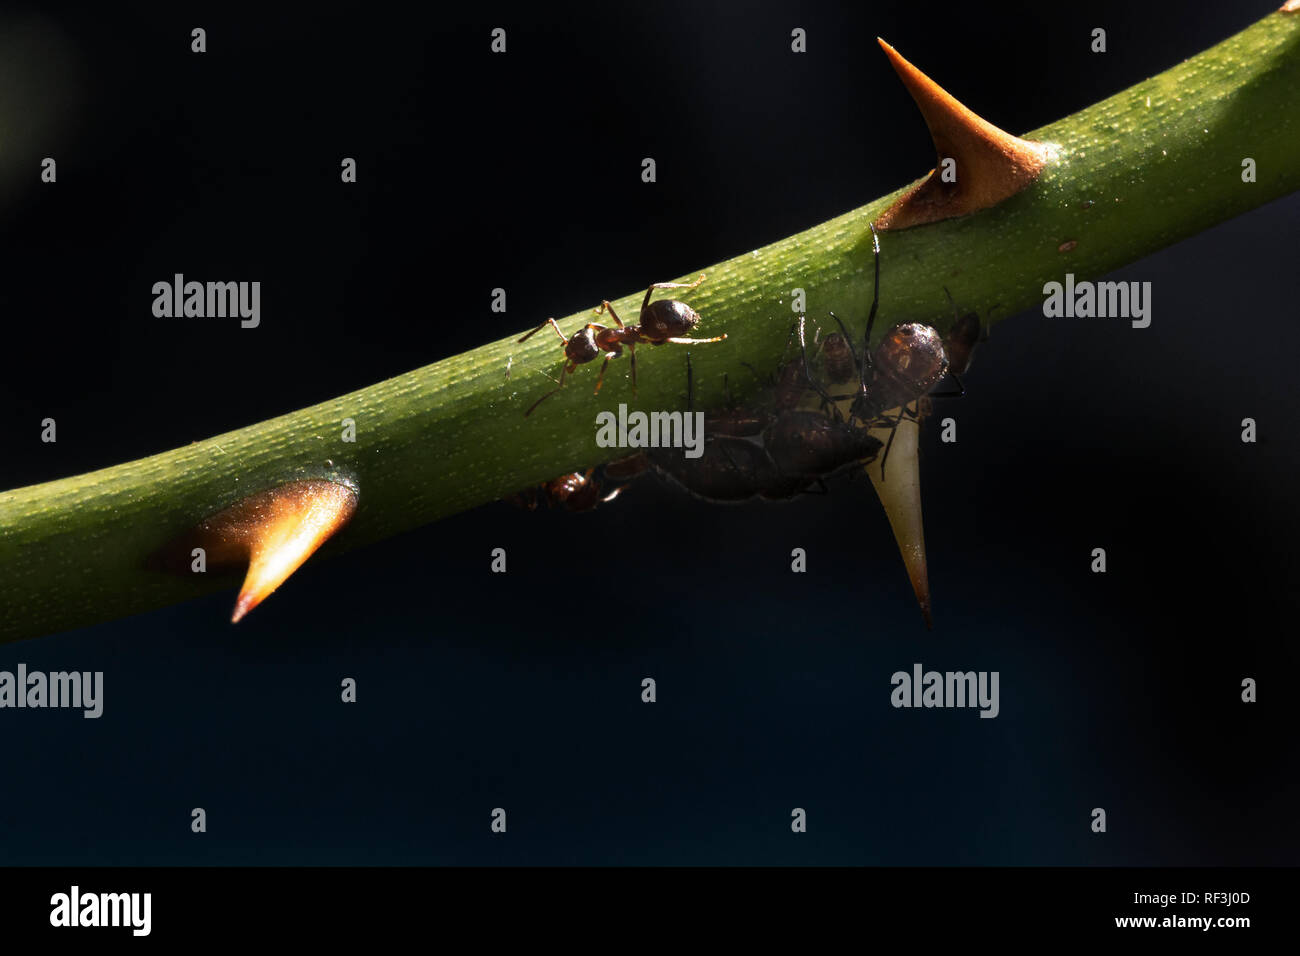 L'alimentation des fourmis on​ les estomacs des pucerons, comme les pucerons se nourrissent de la tige d'une rose Banque D'Images